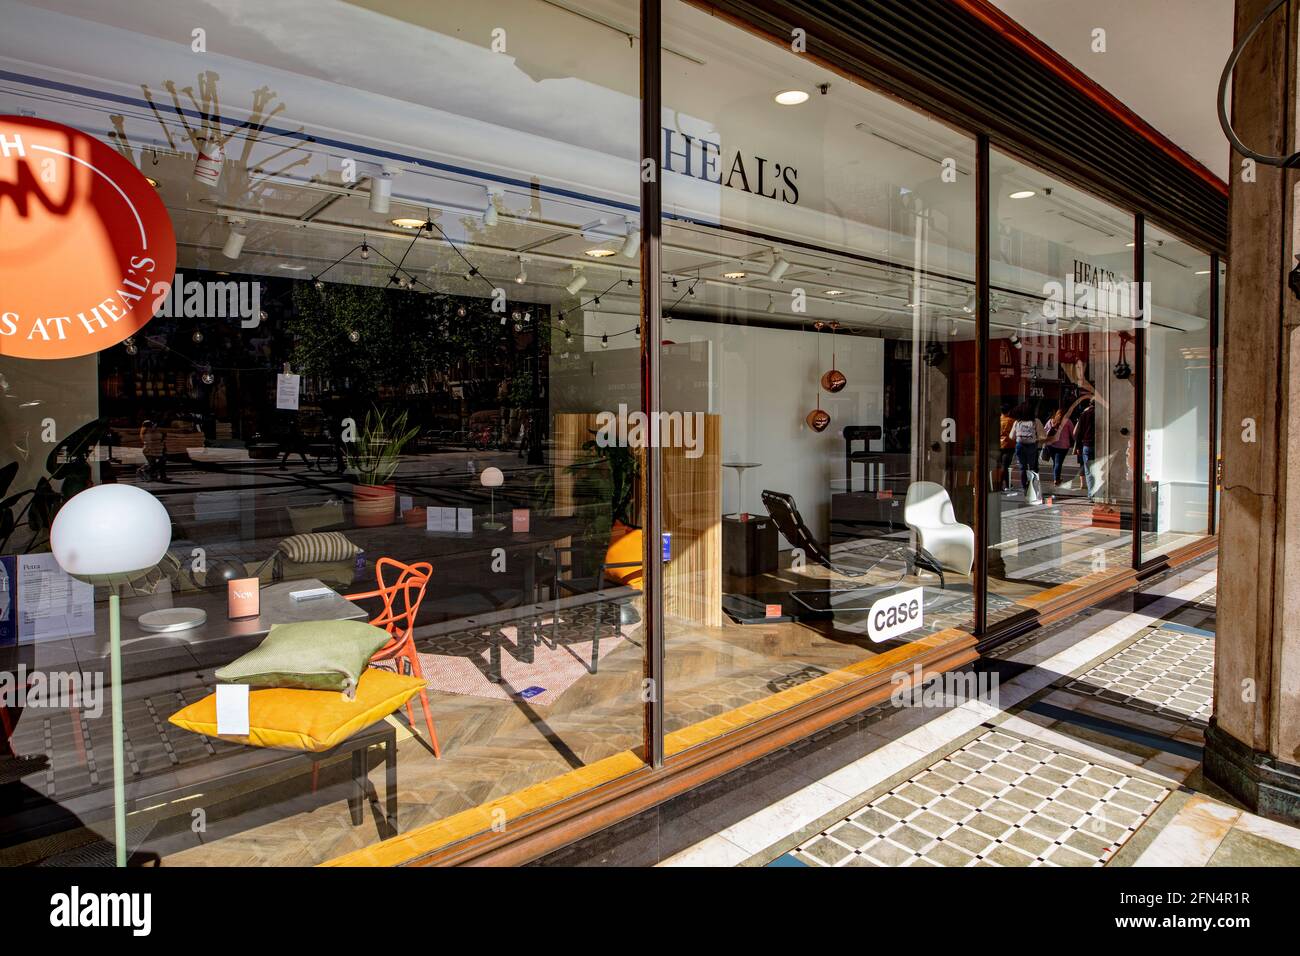 Frontage of Heal's (Heal and Son Ltd), un negozio di mobili di lusso a Londra; il frontage sulla Tottenham Court Road. Foto Stock